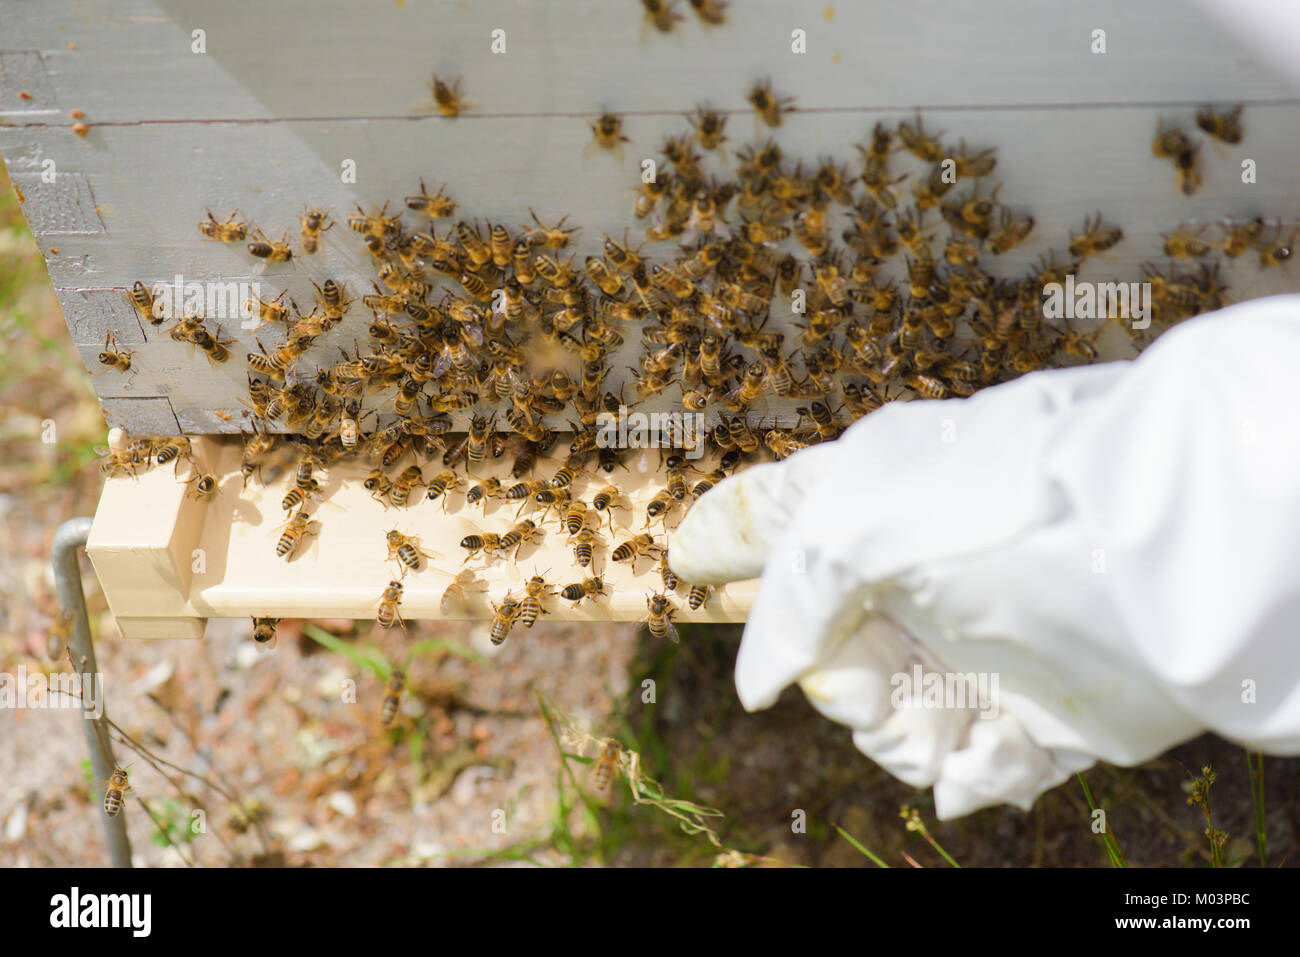 Puntamento a mano per le api su un alveare Foto Stock